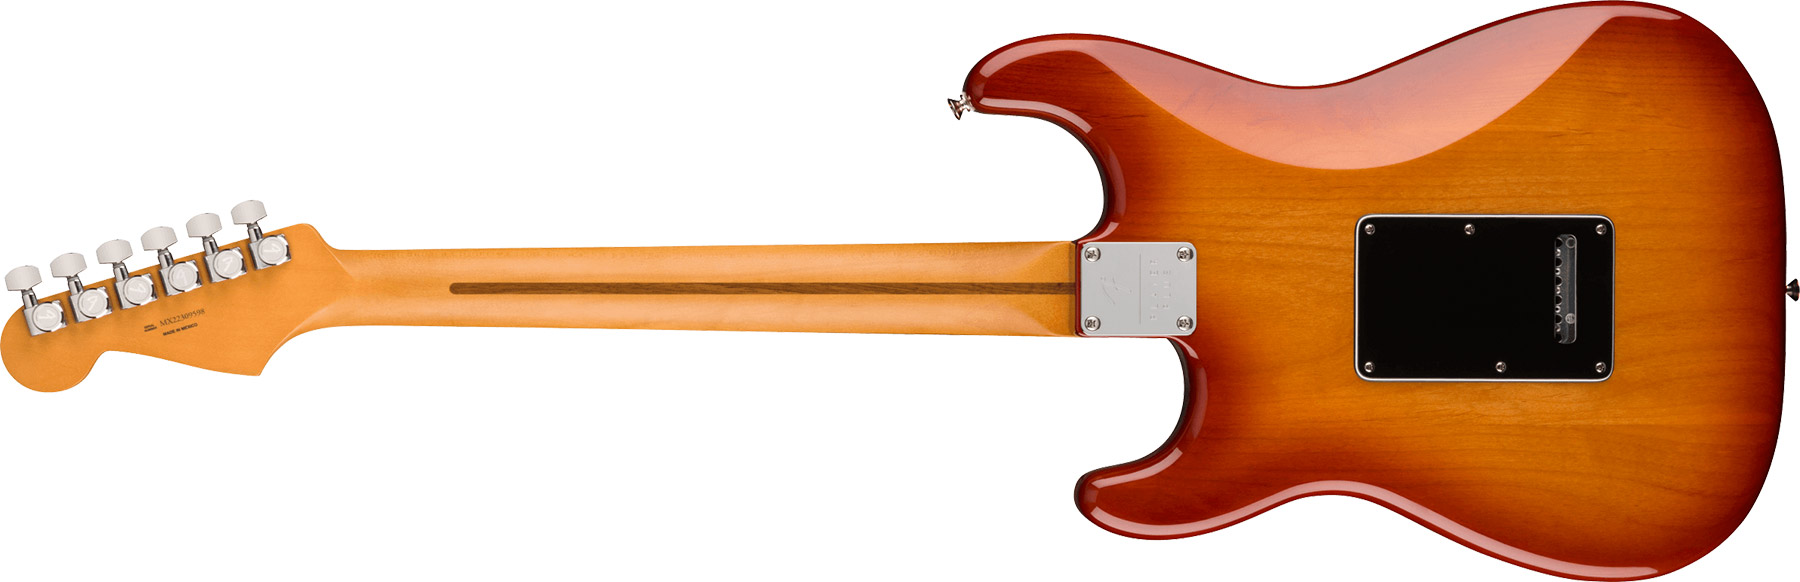 Fender Strat Player Plus Mex 2023 3s Trem Pf - Sienna Sunburst - Elektrische gitaar in Str-vorm - Variation 1